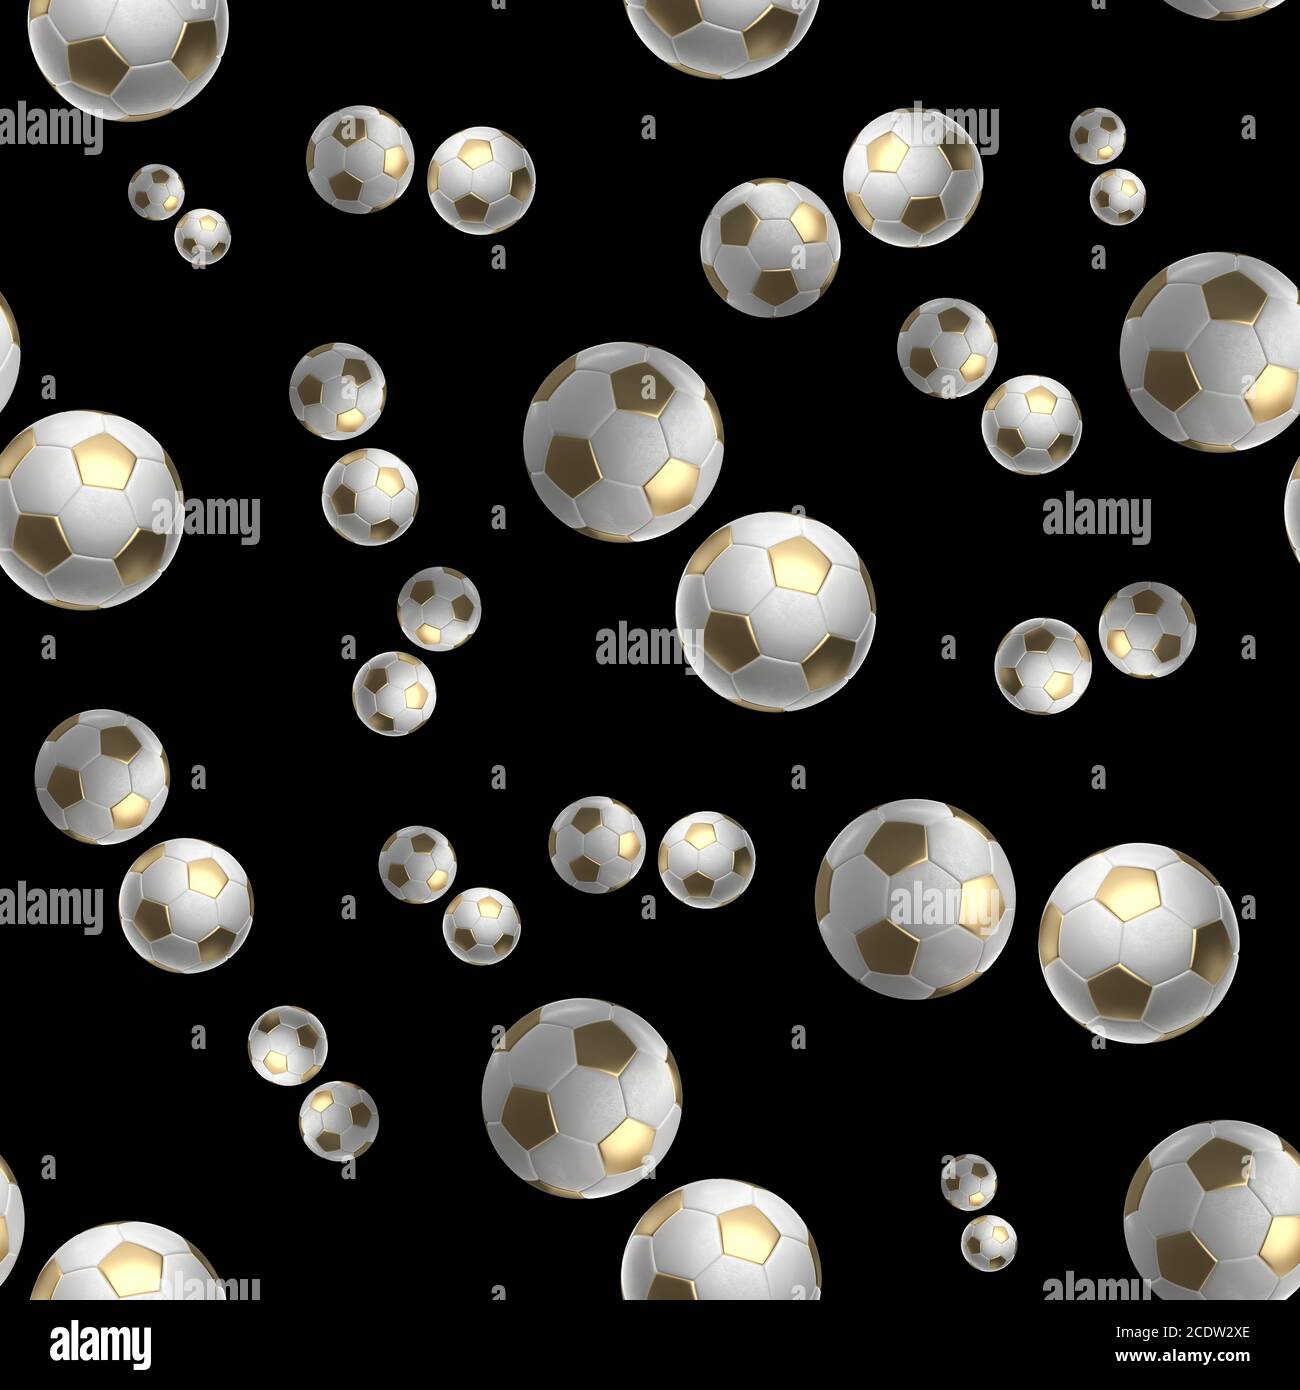 sfere Golden Soccer isolate su sfondo nero disegno senza giunture illustrazione 3d Foto Stock